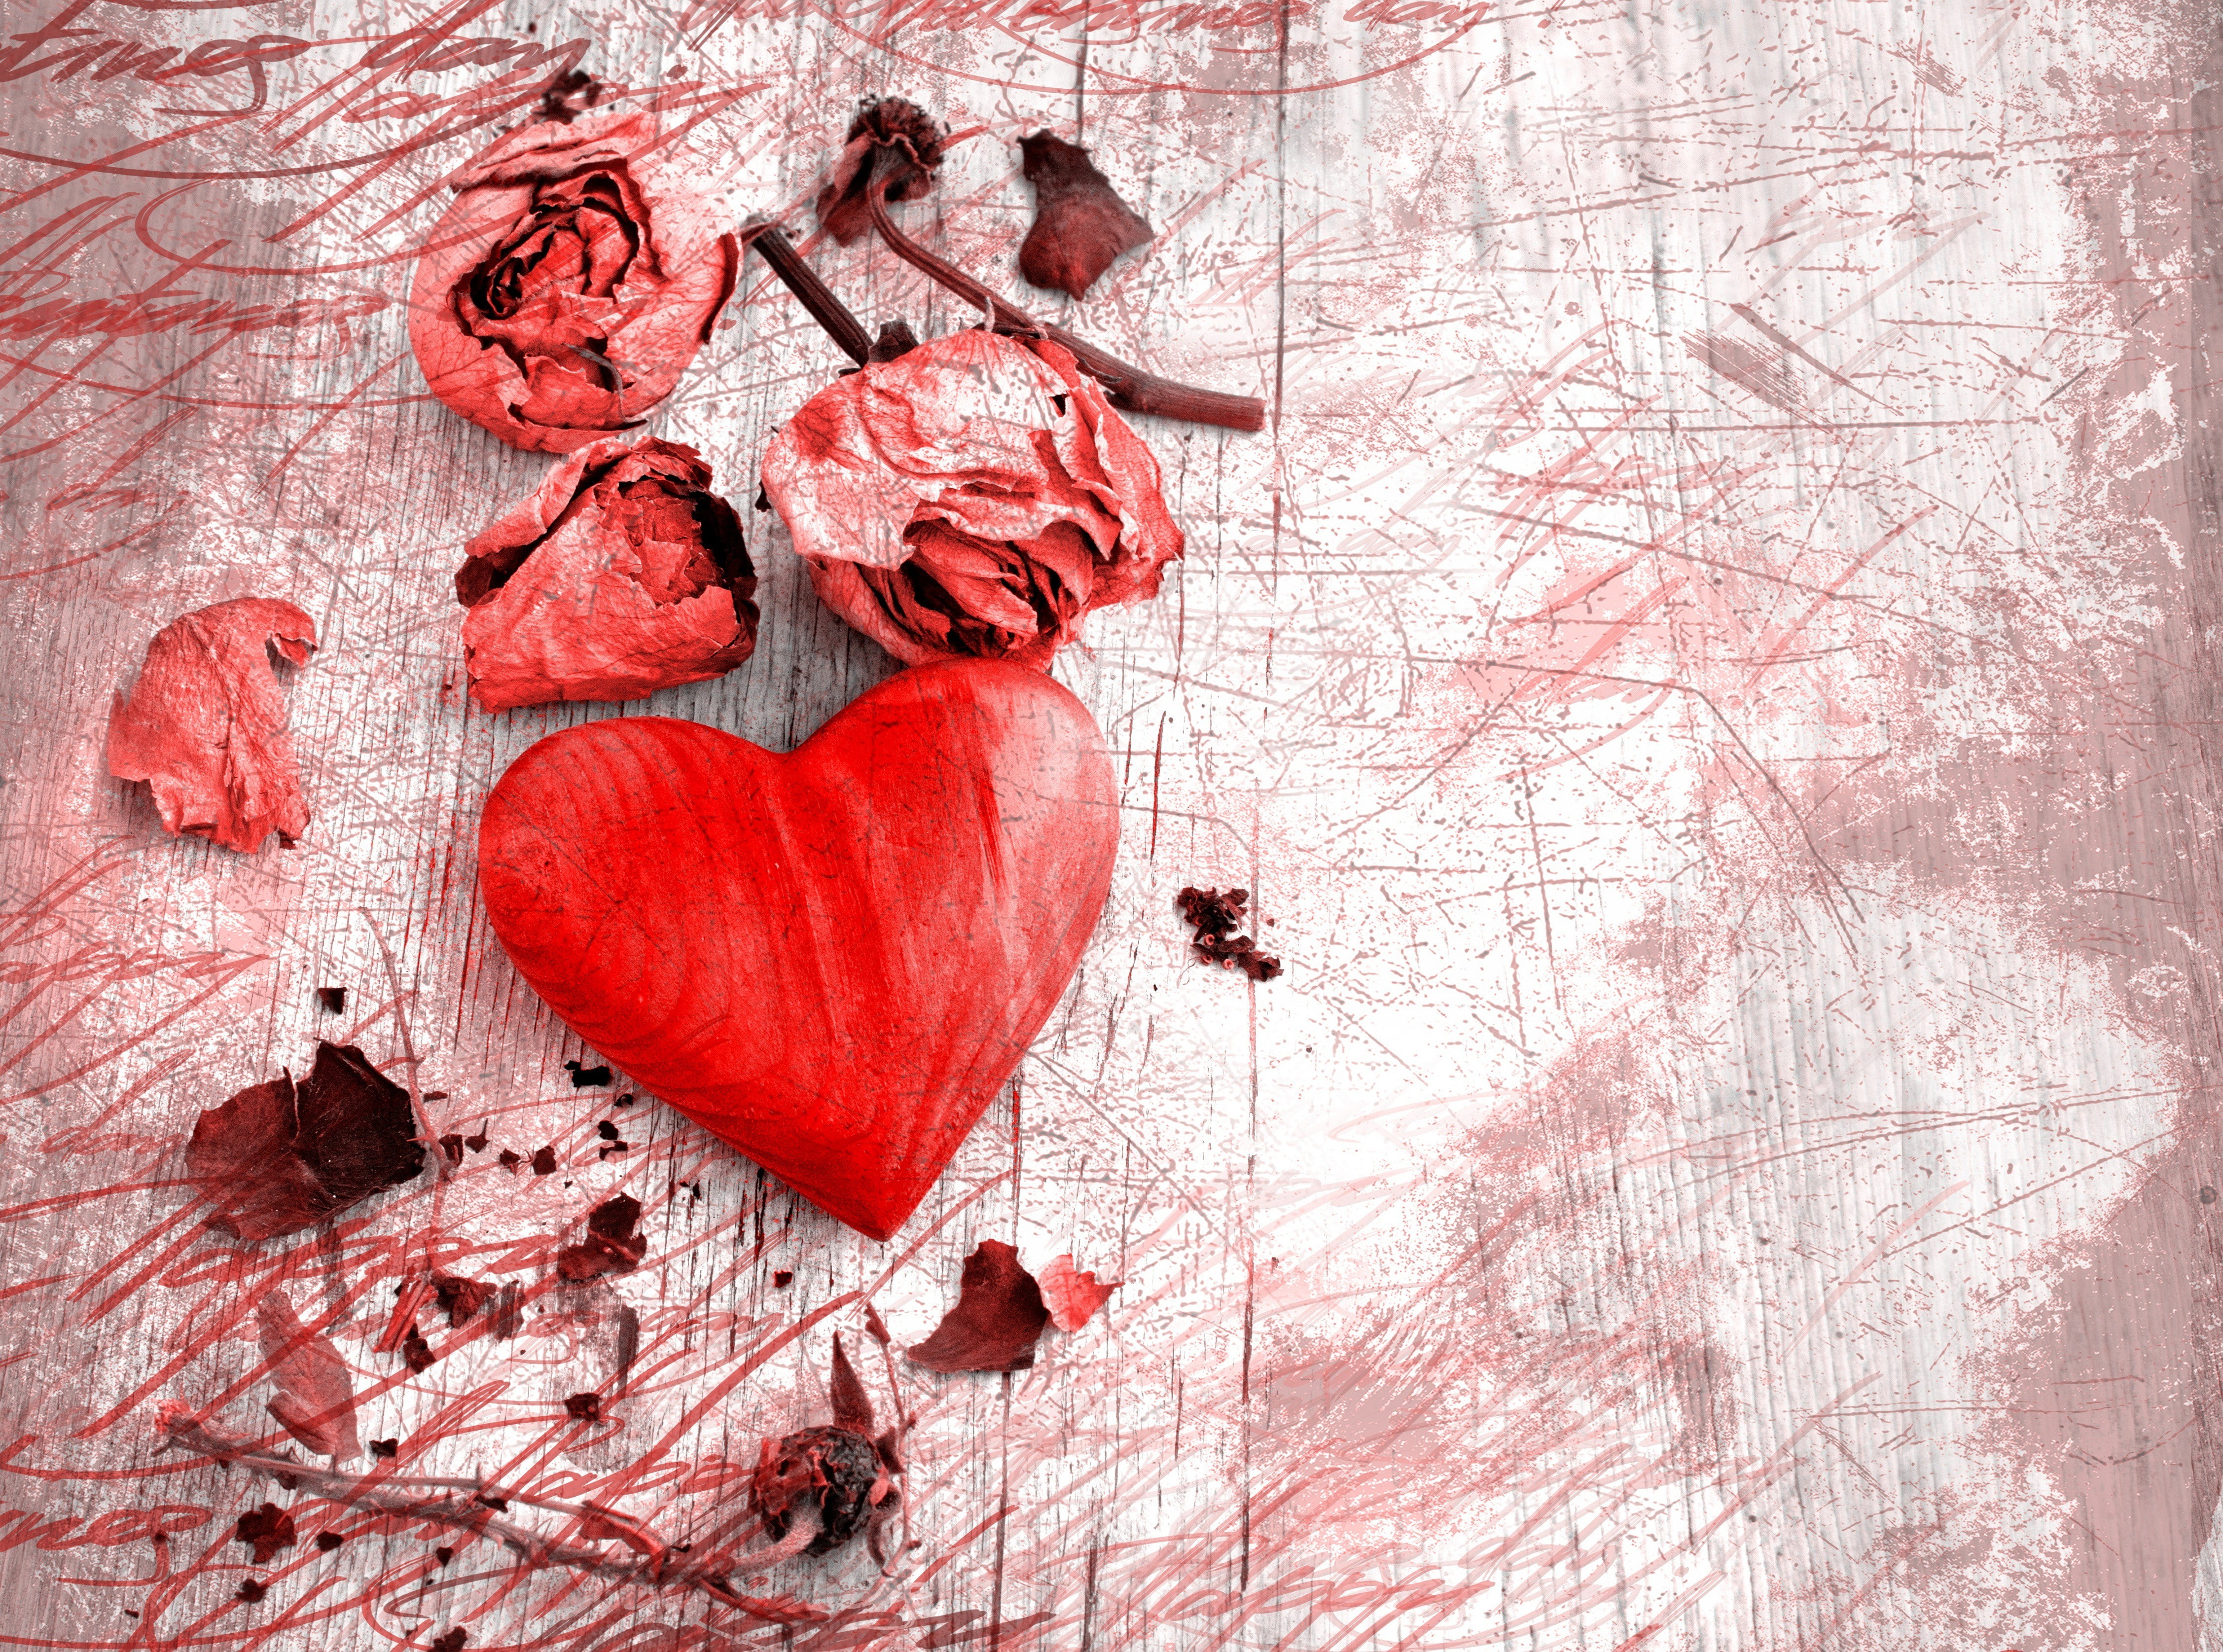 Rose petals, heart